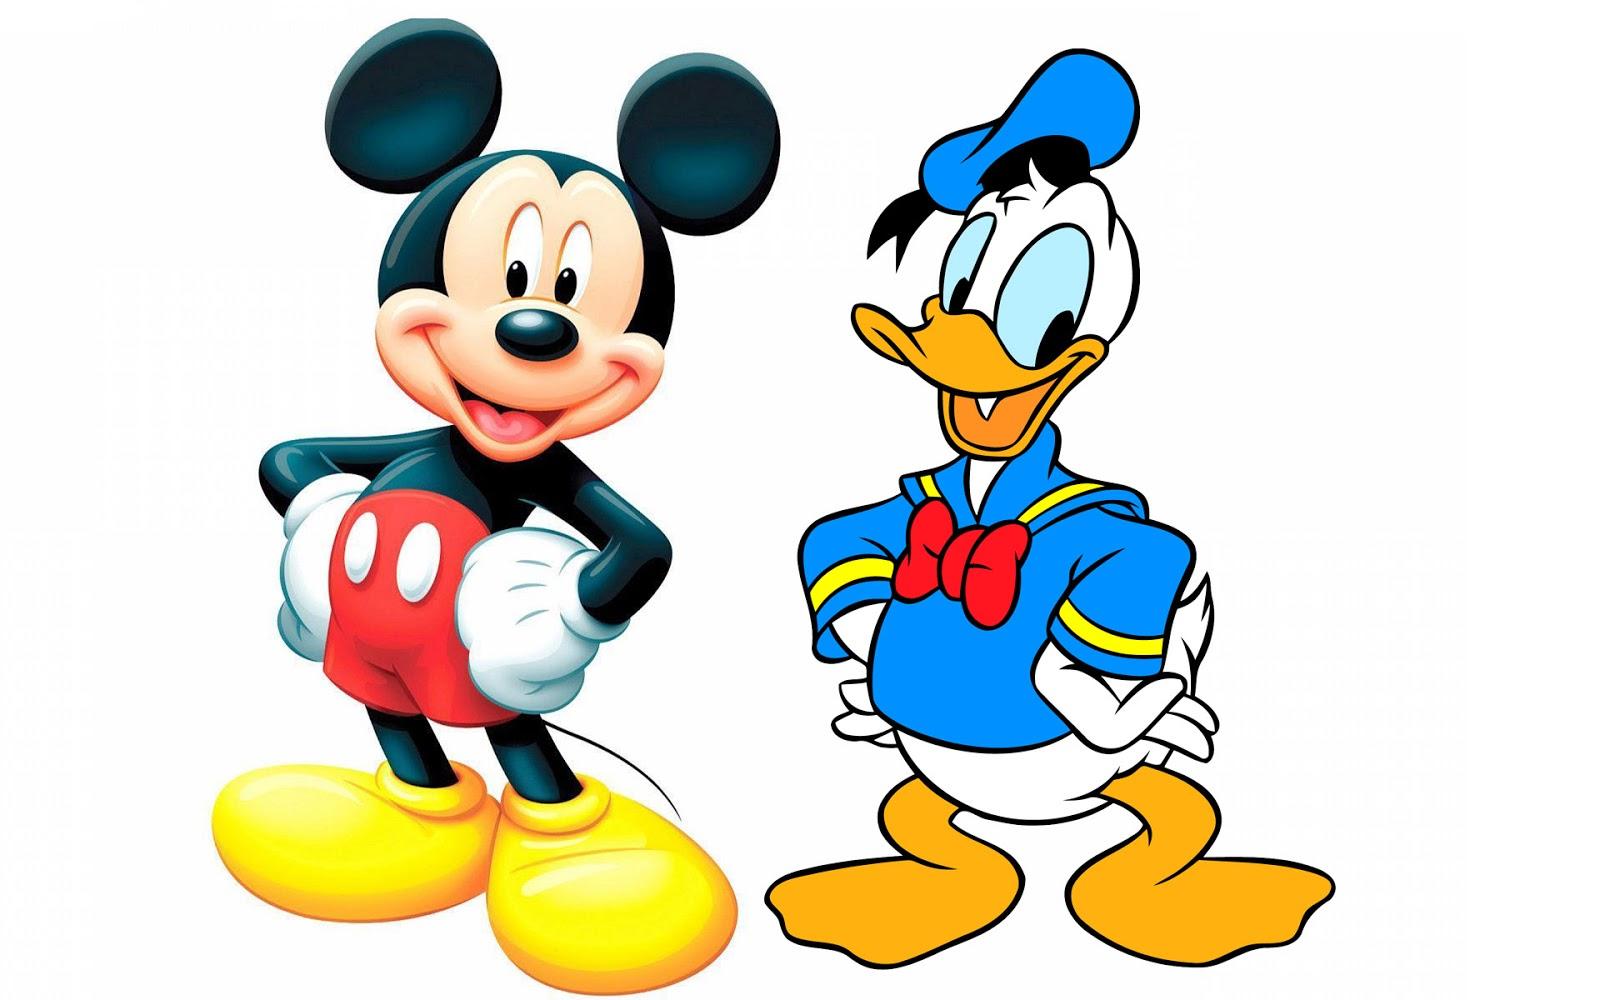 Vịt Donald là bạn thân của chú chuột Mickey